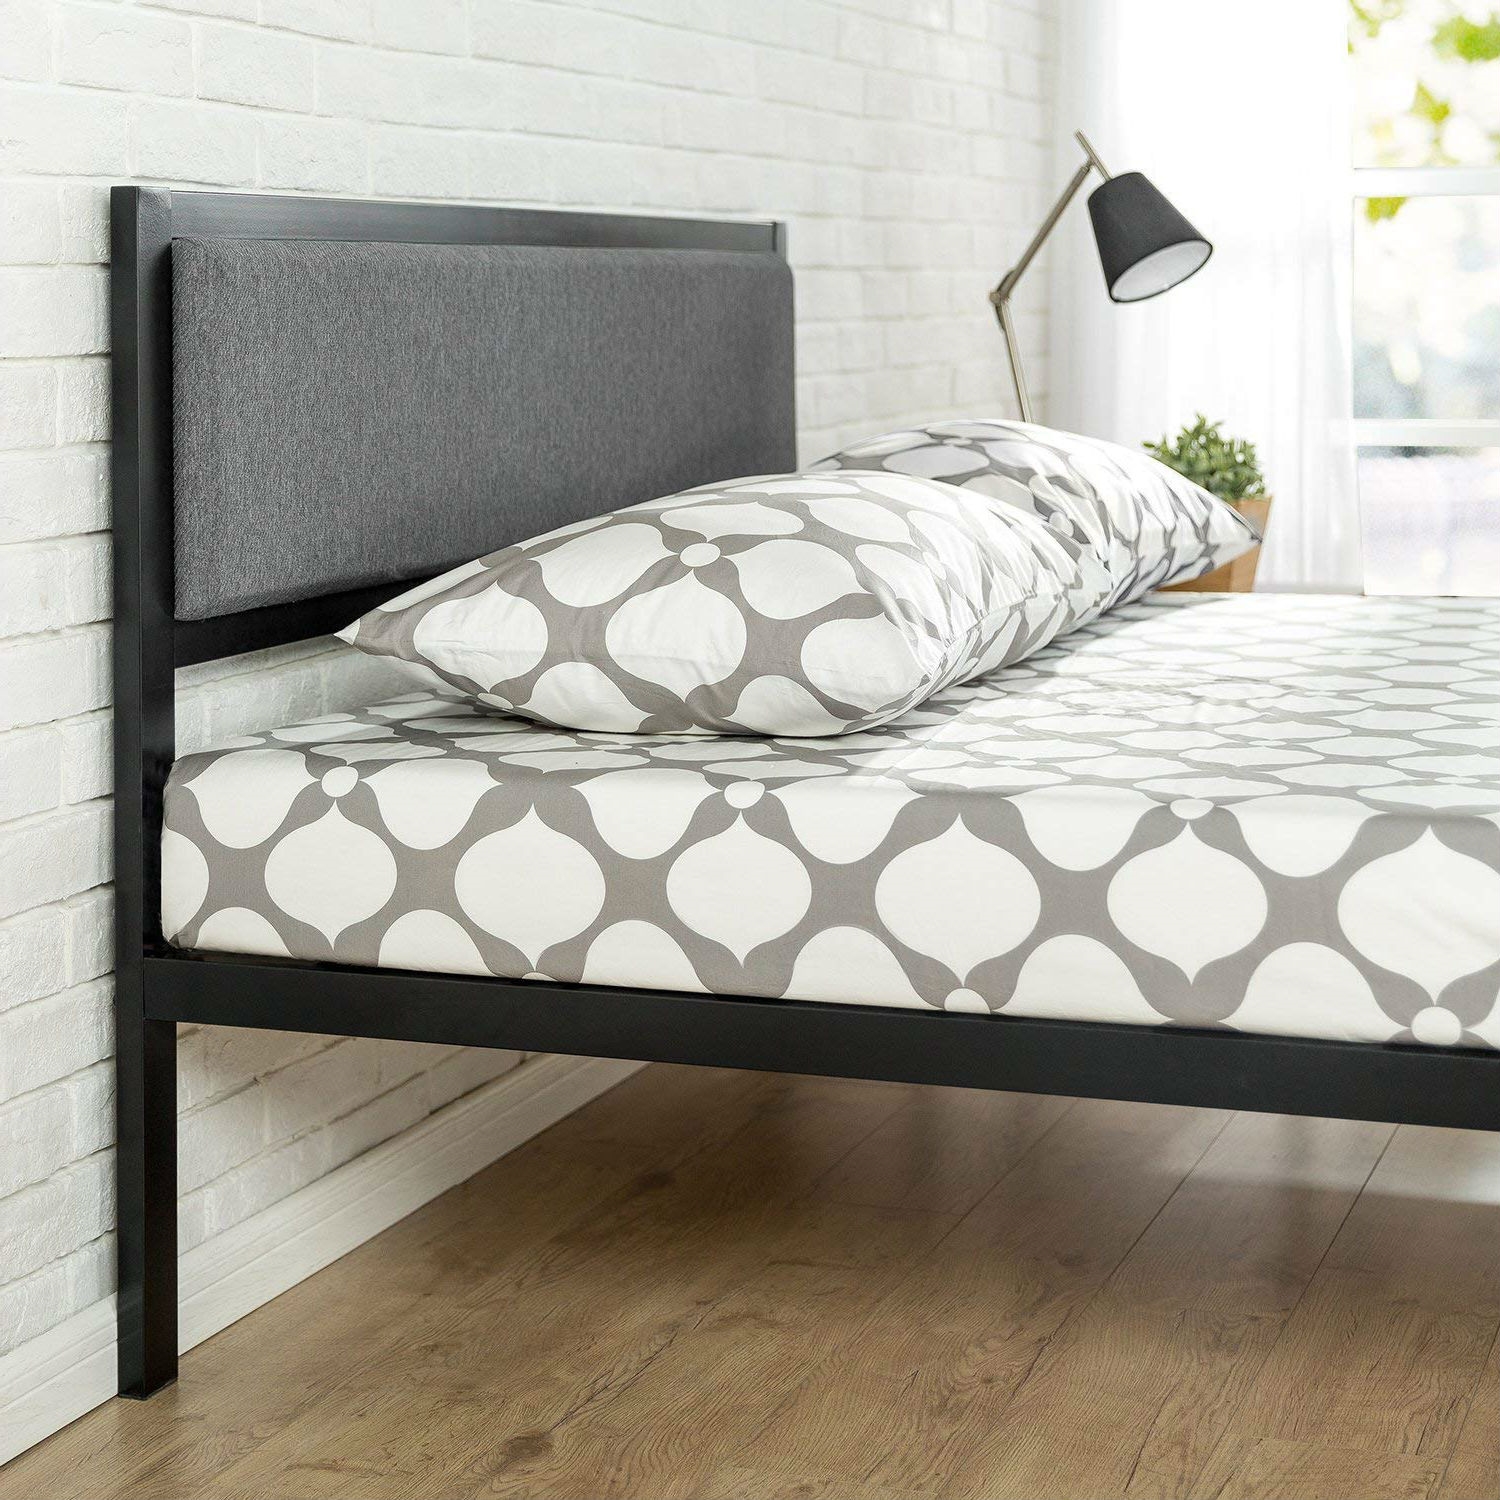 Queen Size Metal Platform Bed Frame, King Size Platform Bed Frame With Headboard Upholstered Tufted Wooden Slats